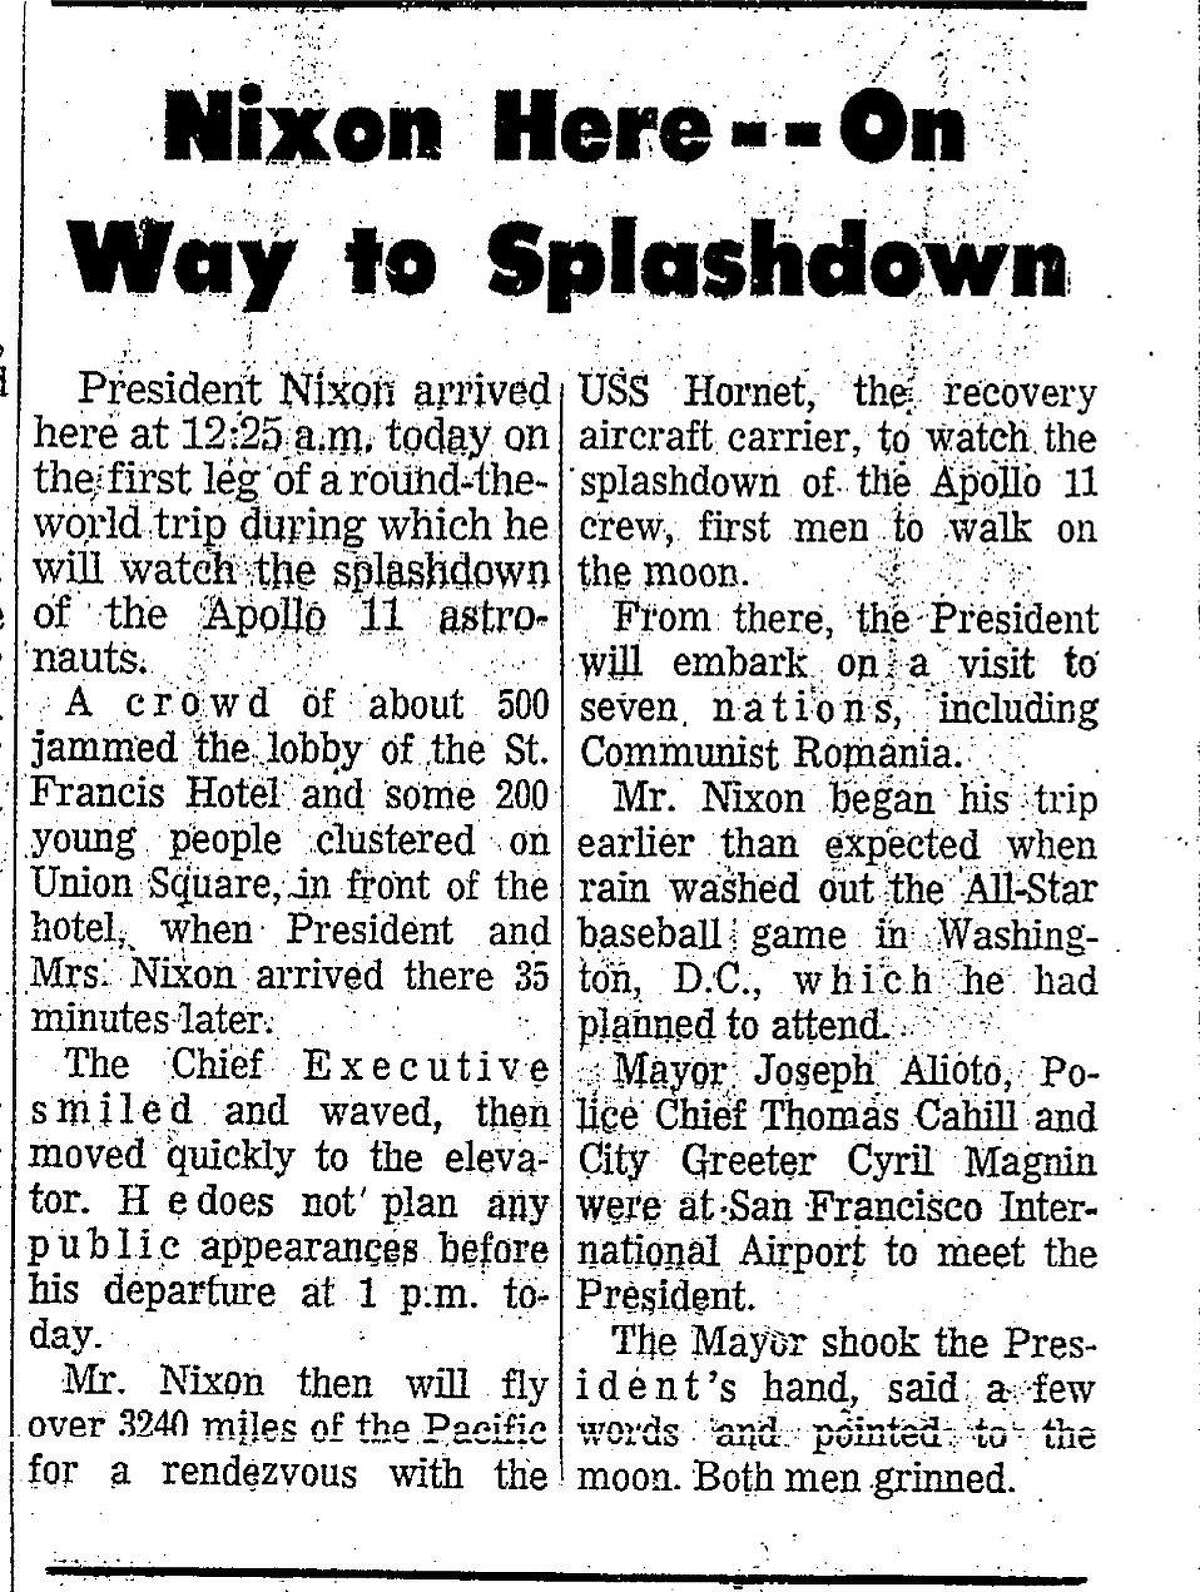 1969年7月23日的《纪事报》报道了理查德·尼克松的访问，他将在圣弗朗西斯科酒店过夜，然后继续他的旅程